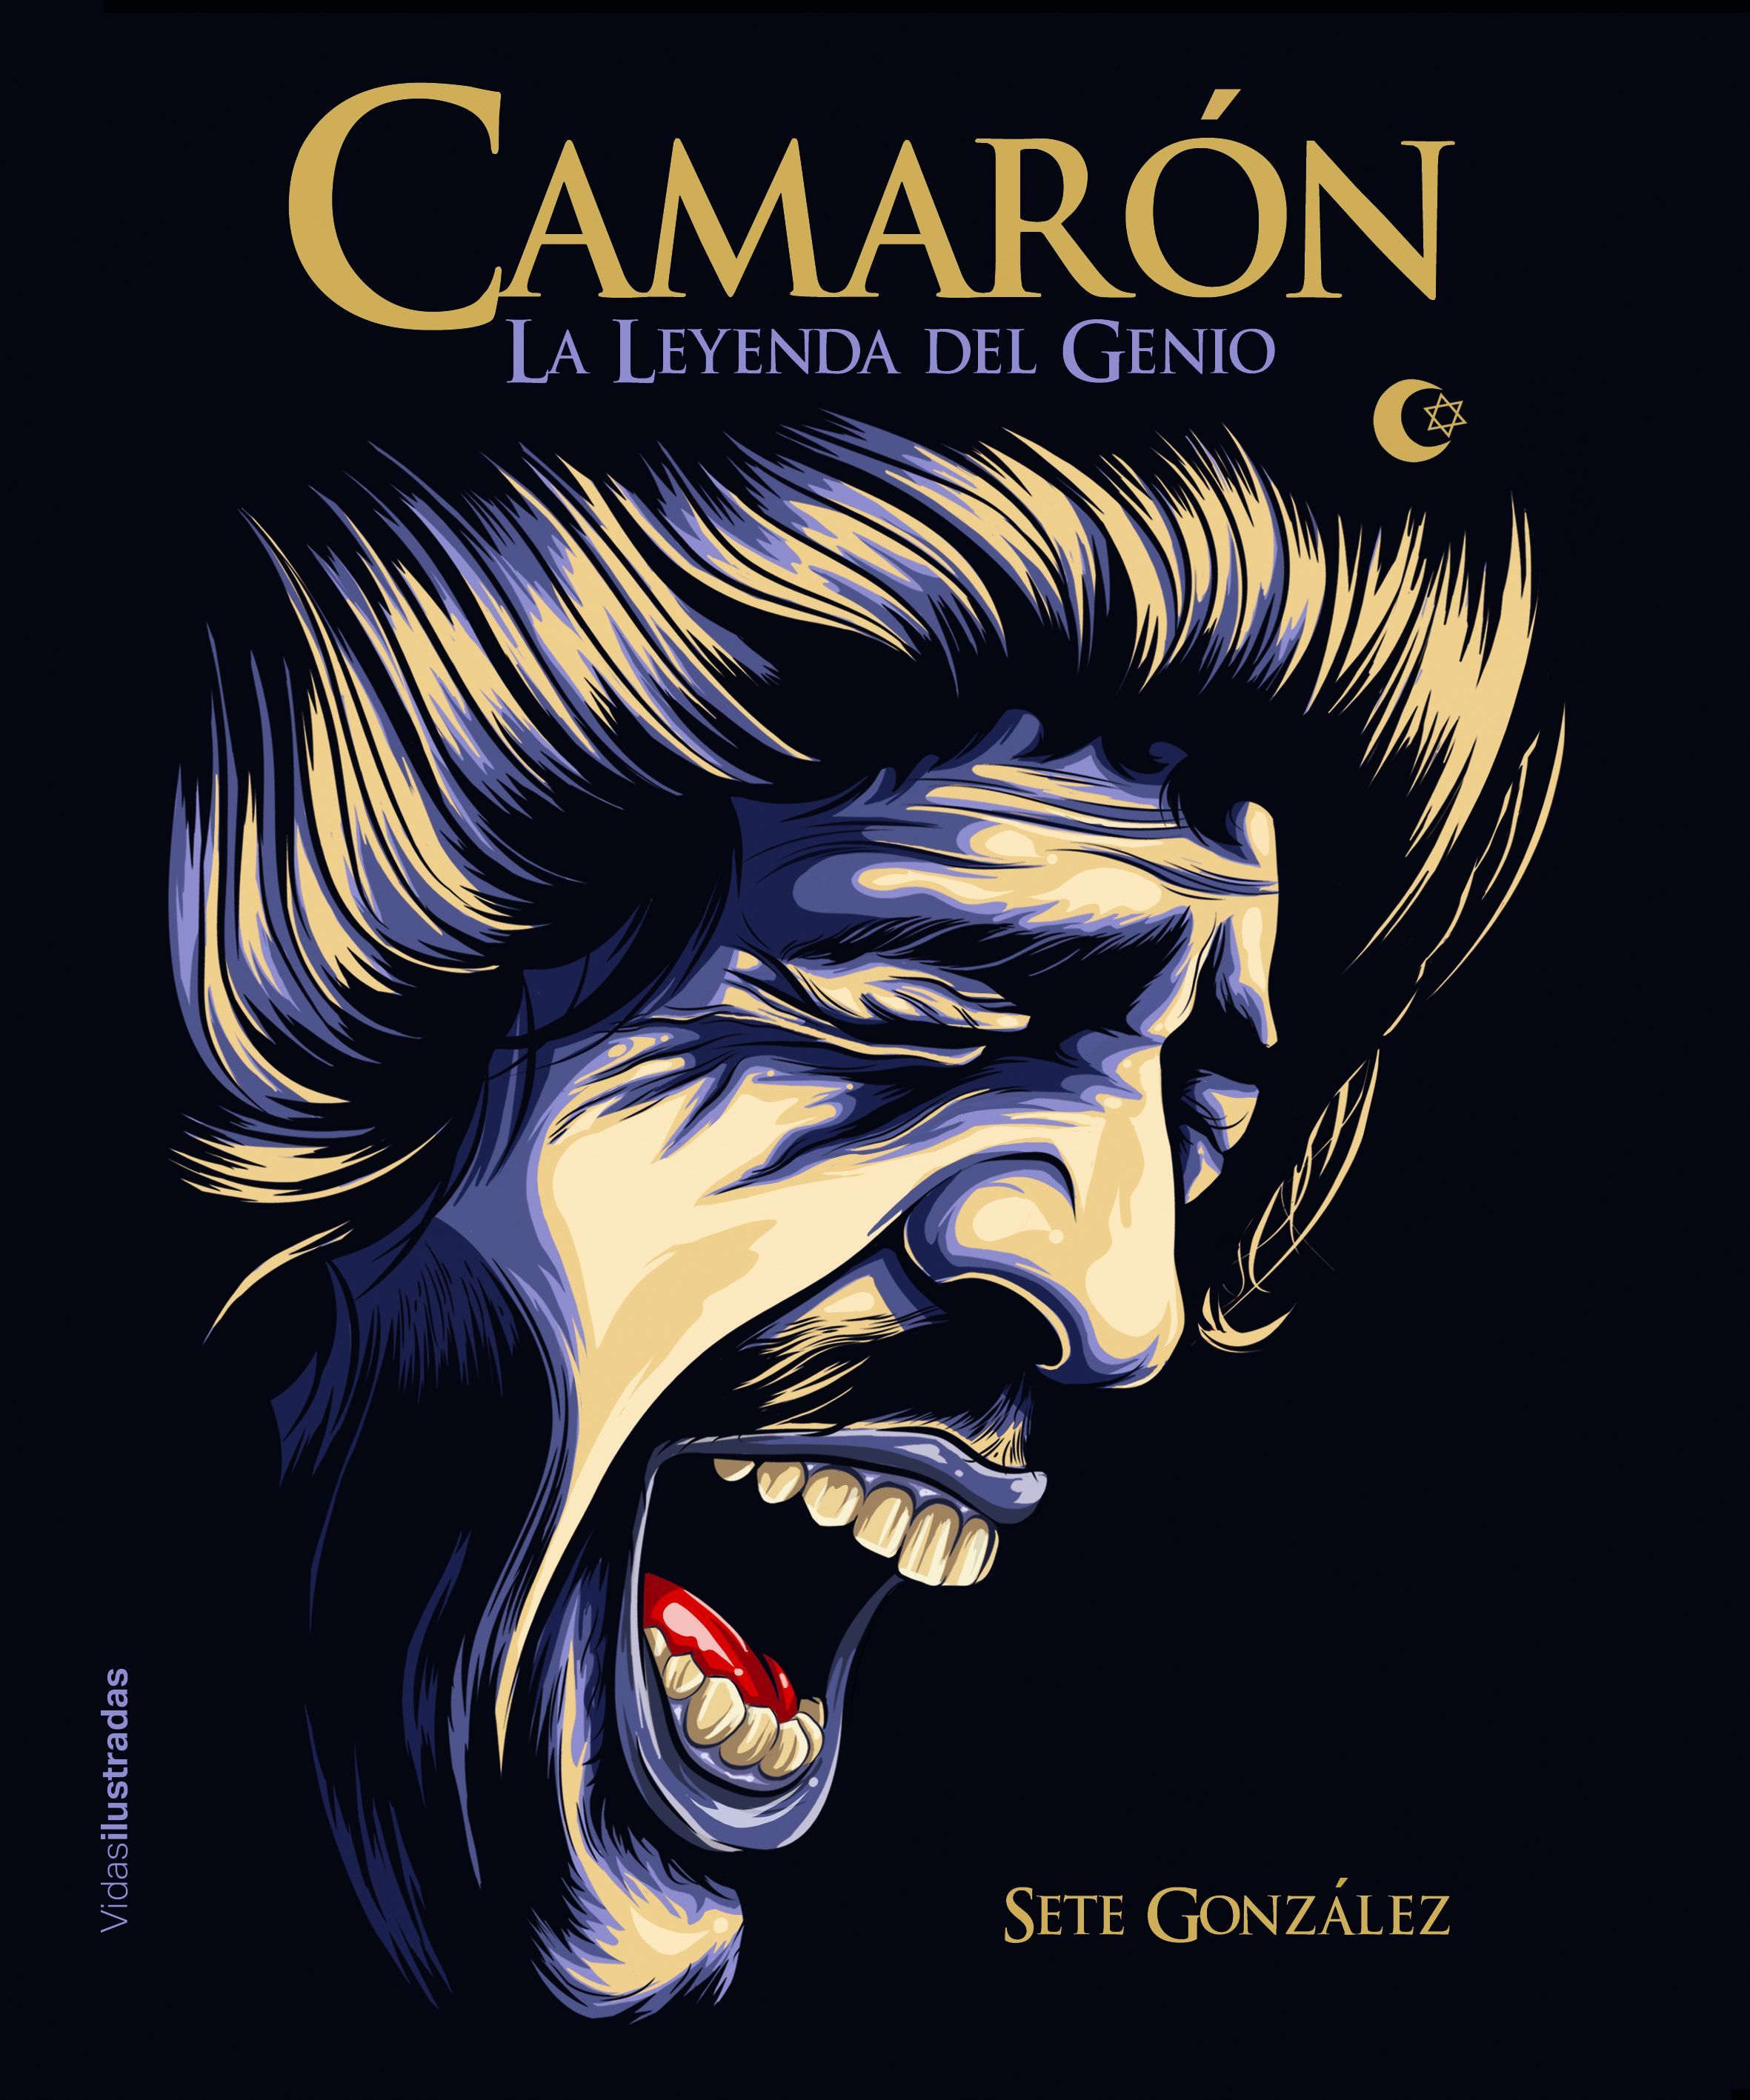 'Camarón. La leyenda del genio', se publica la biografía ilustrada de quien revolucionó ddl flamenco